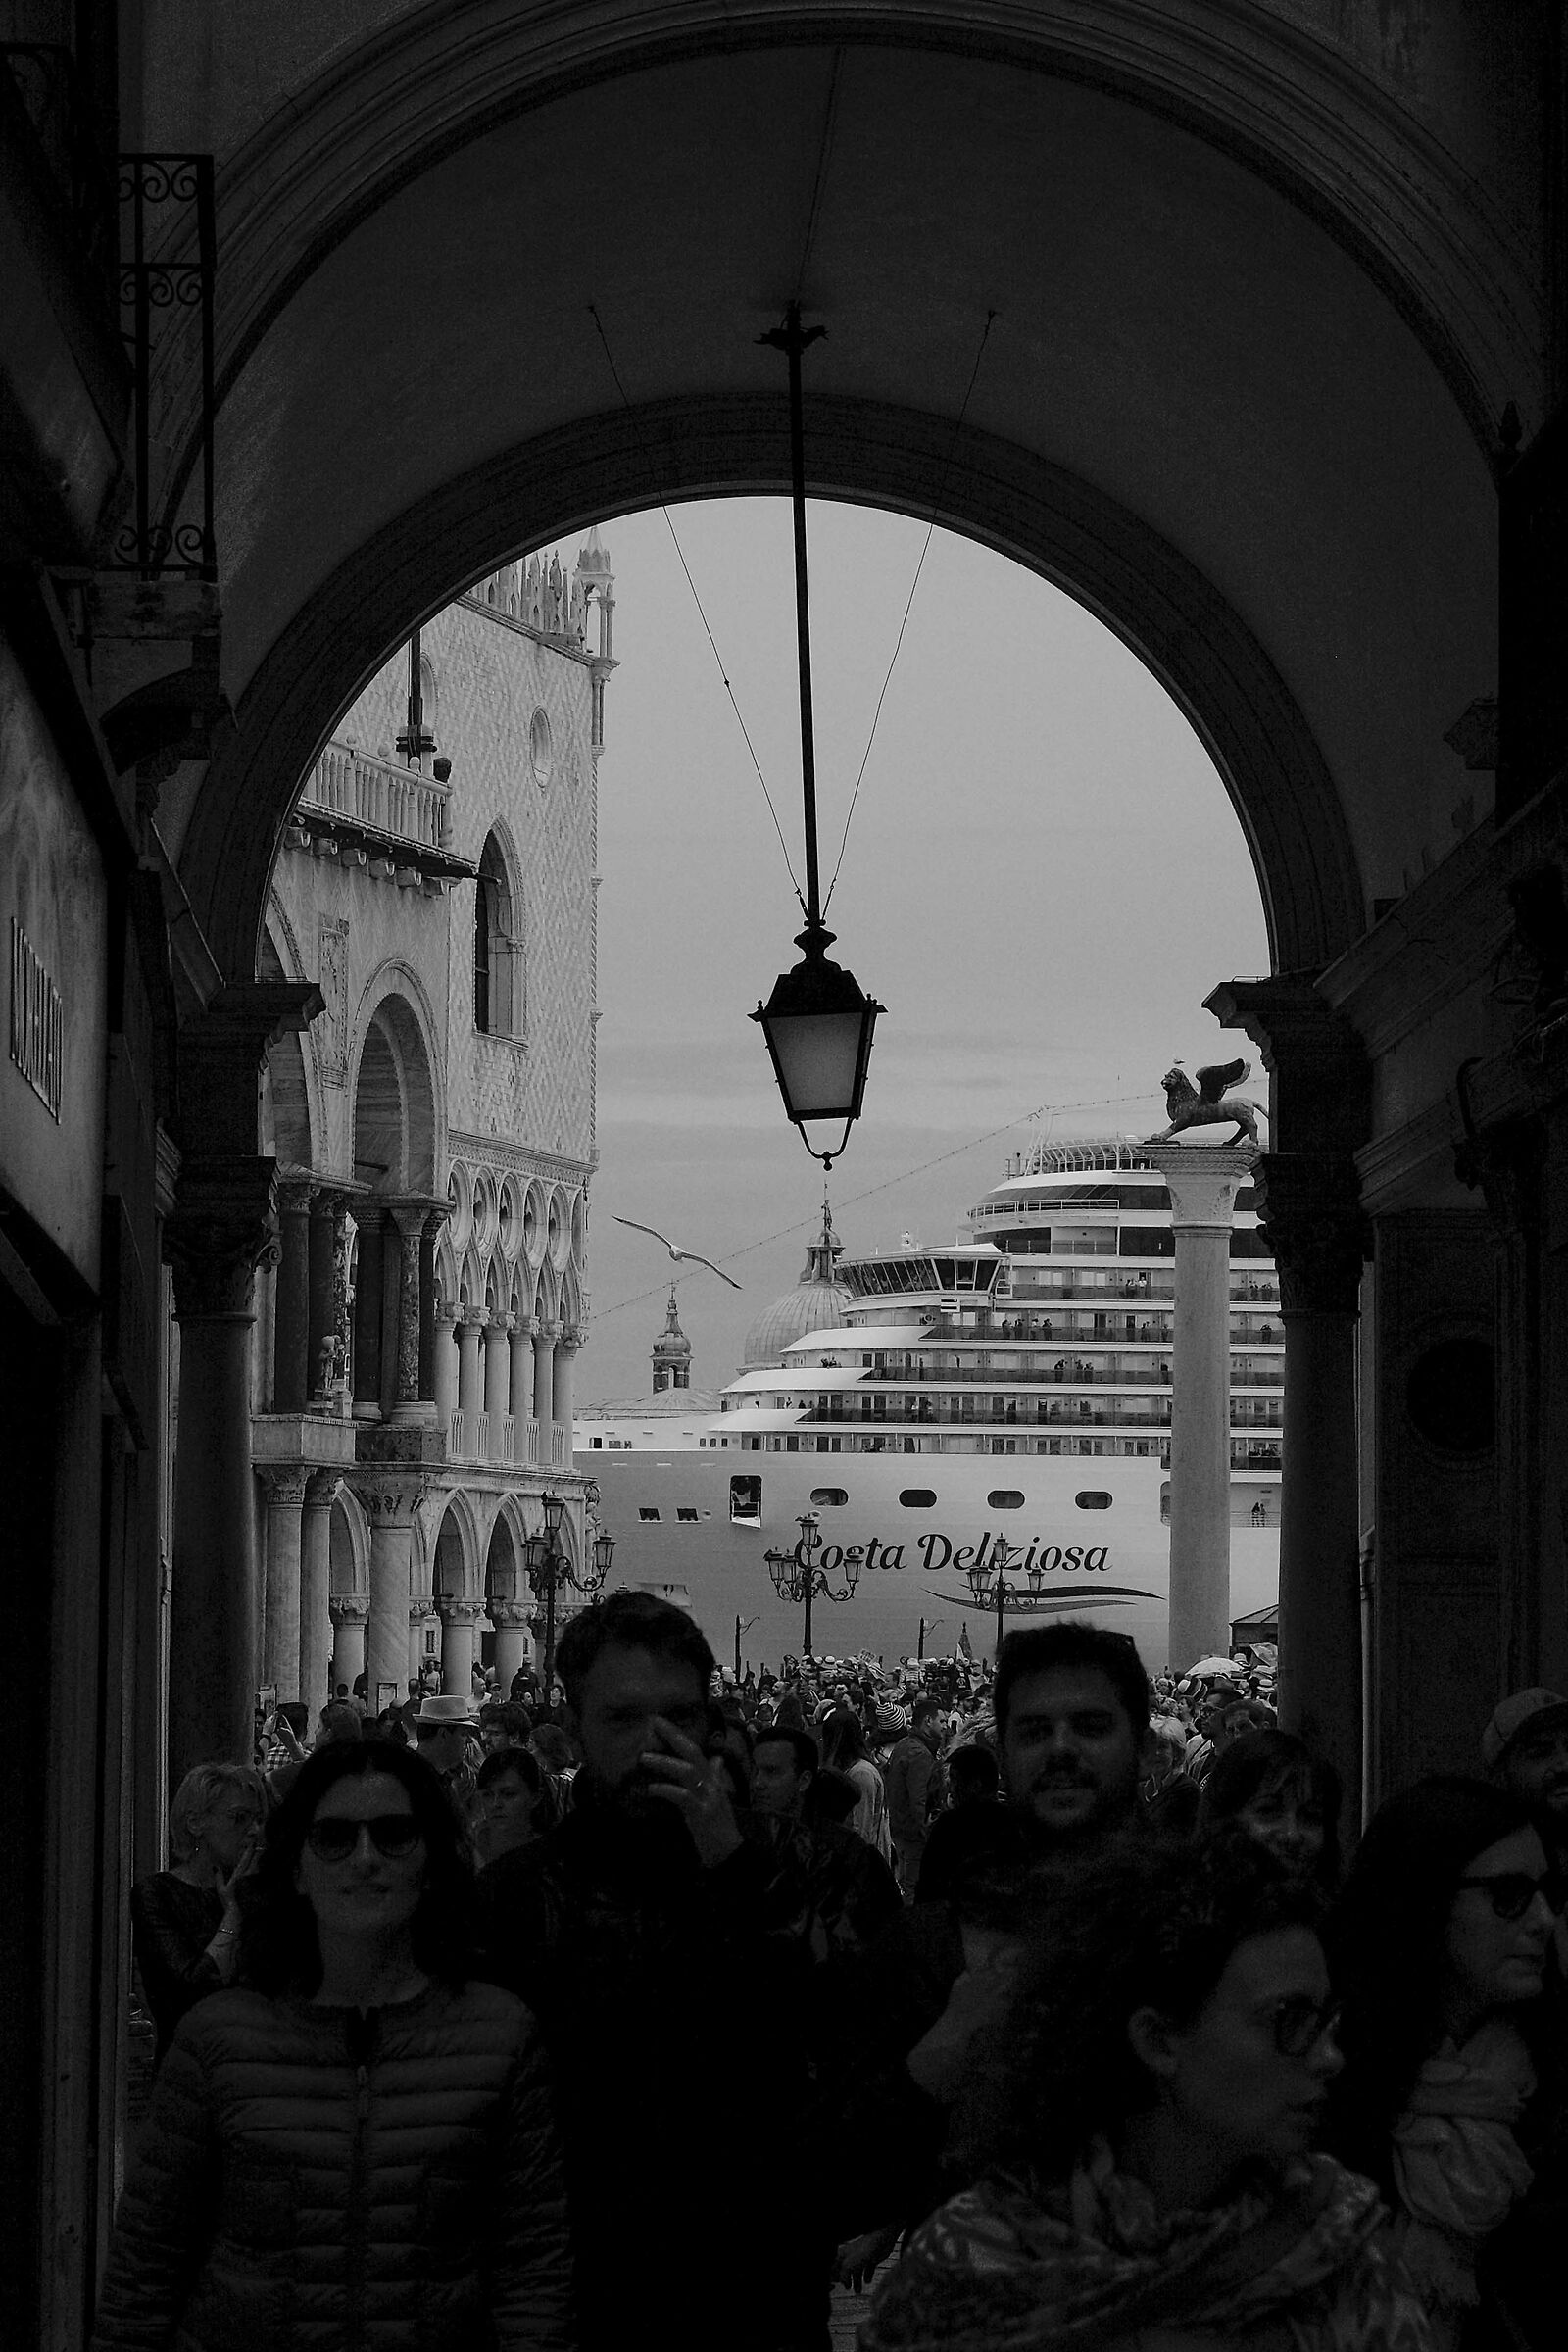 Venice on a cruise...